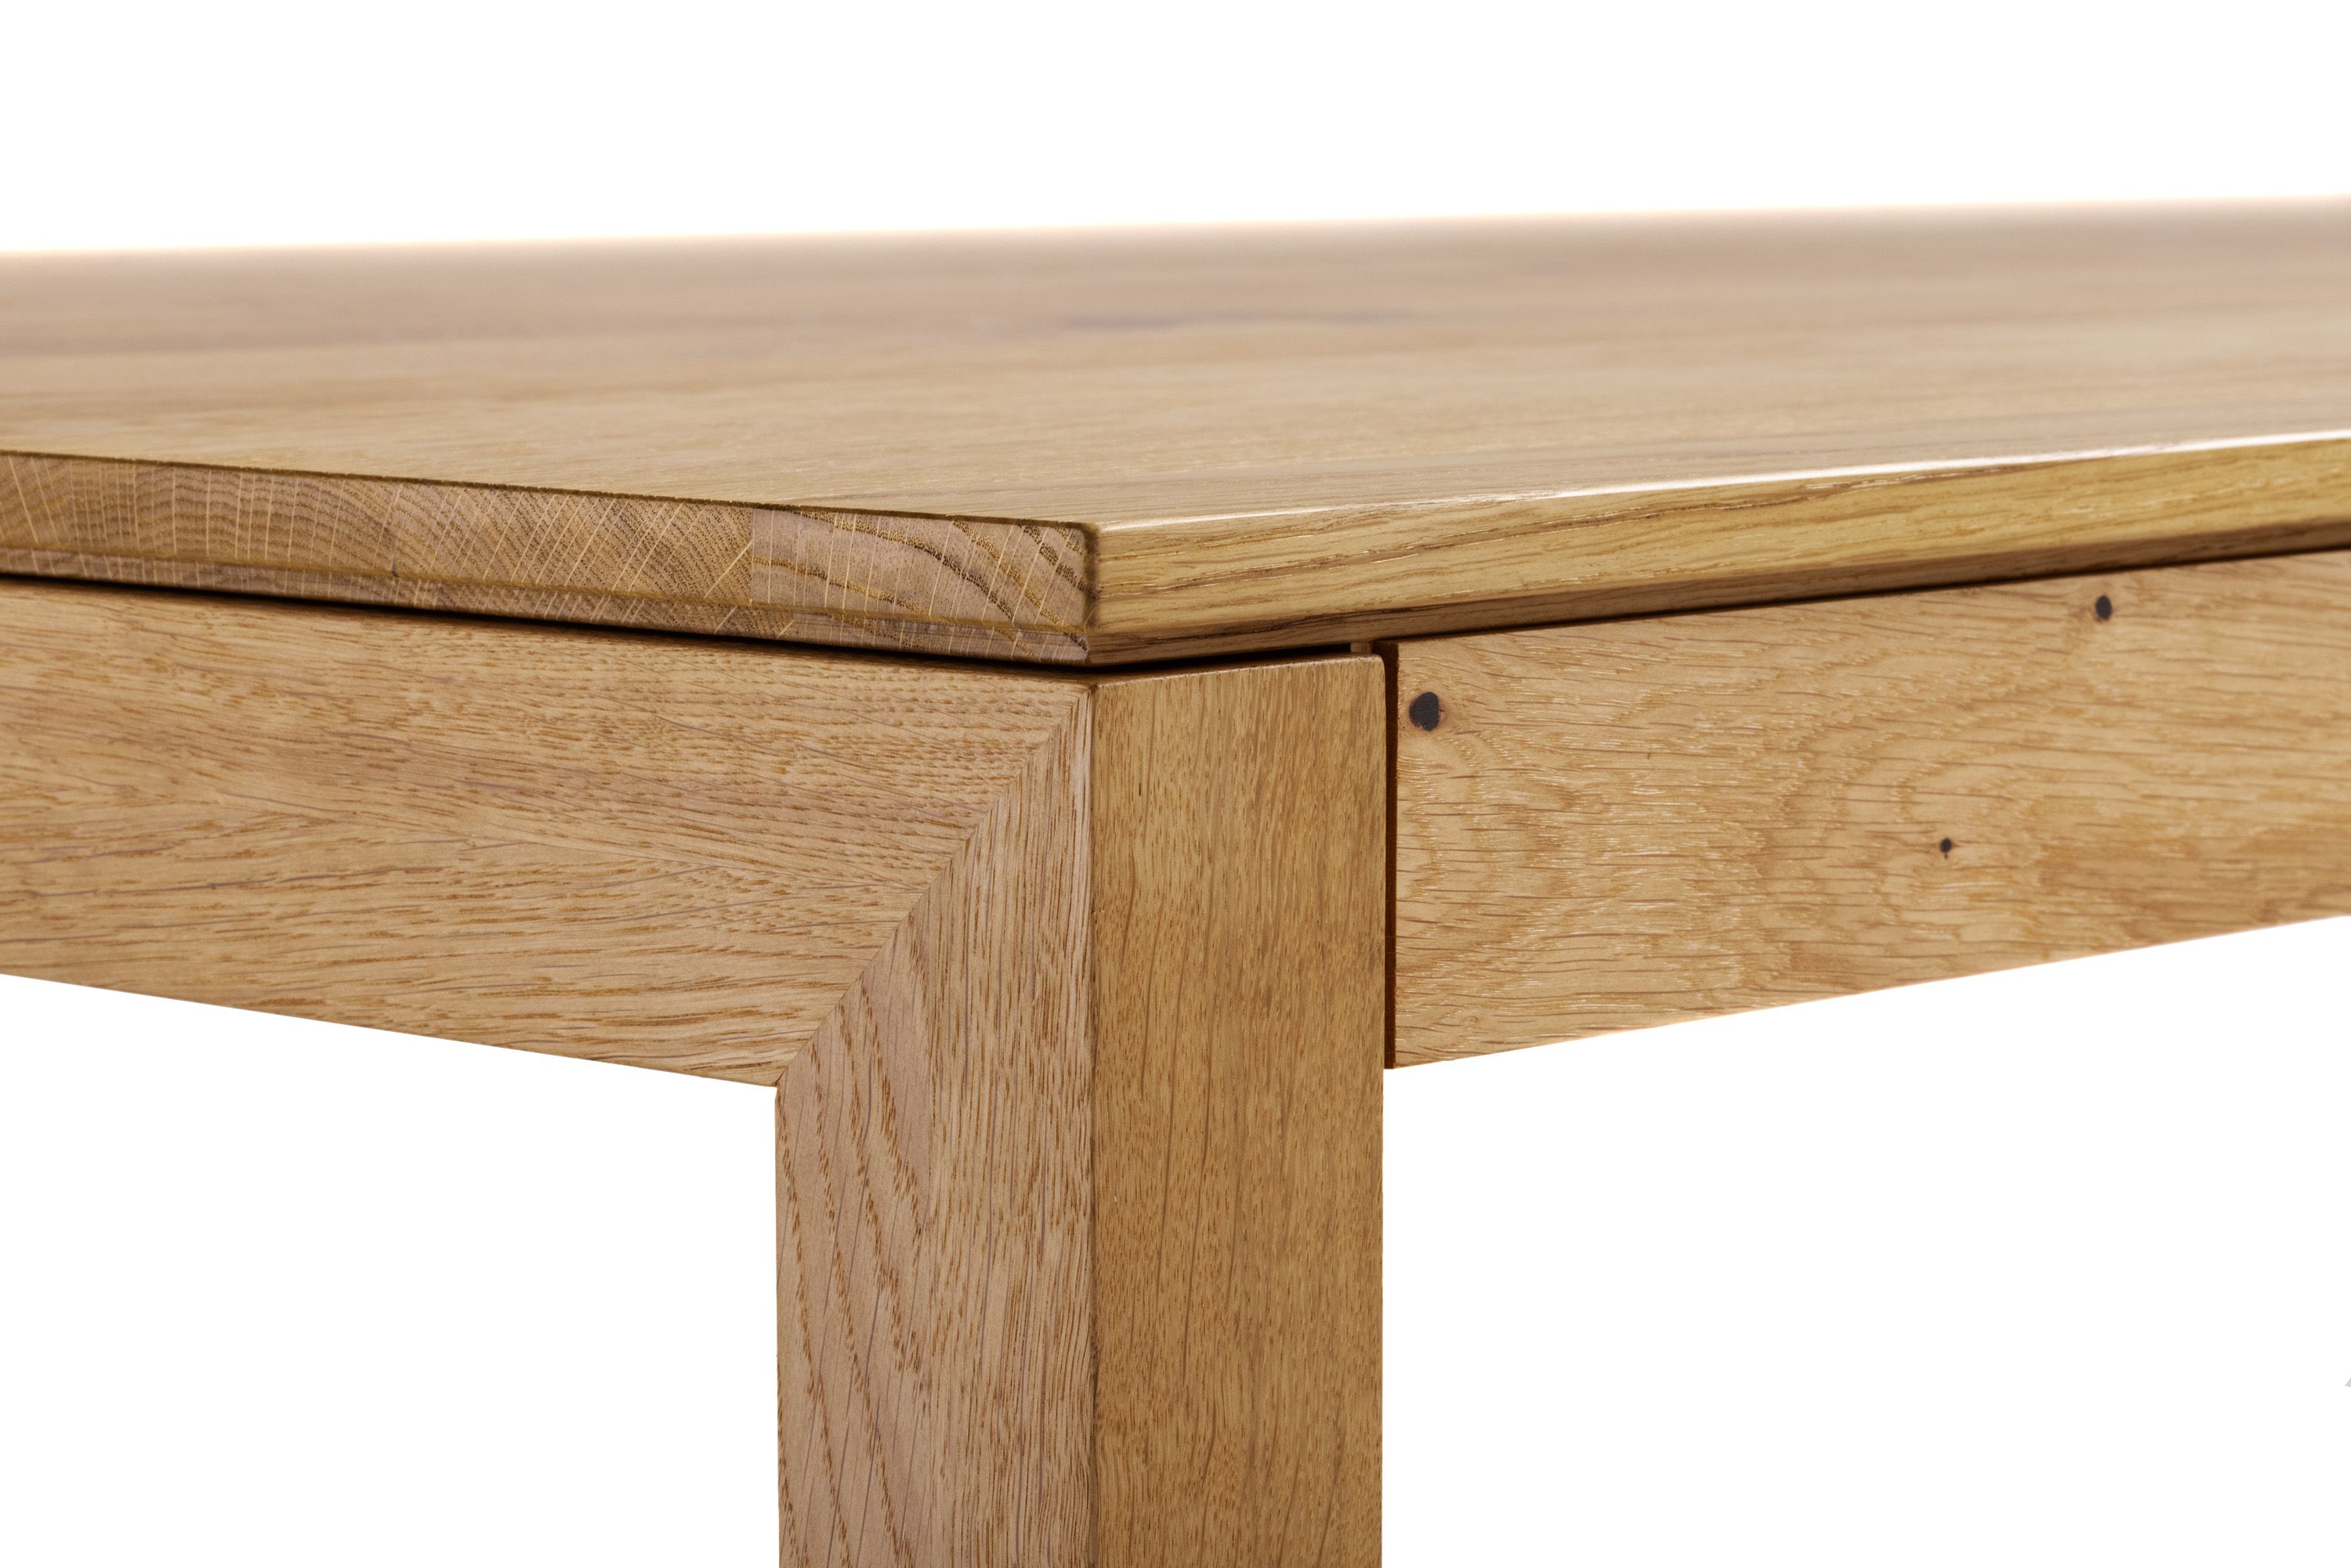 Detailfoto: Tischbein und bündige Tischzarge - Esstisch Gardo Holz